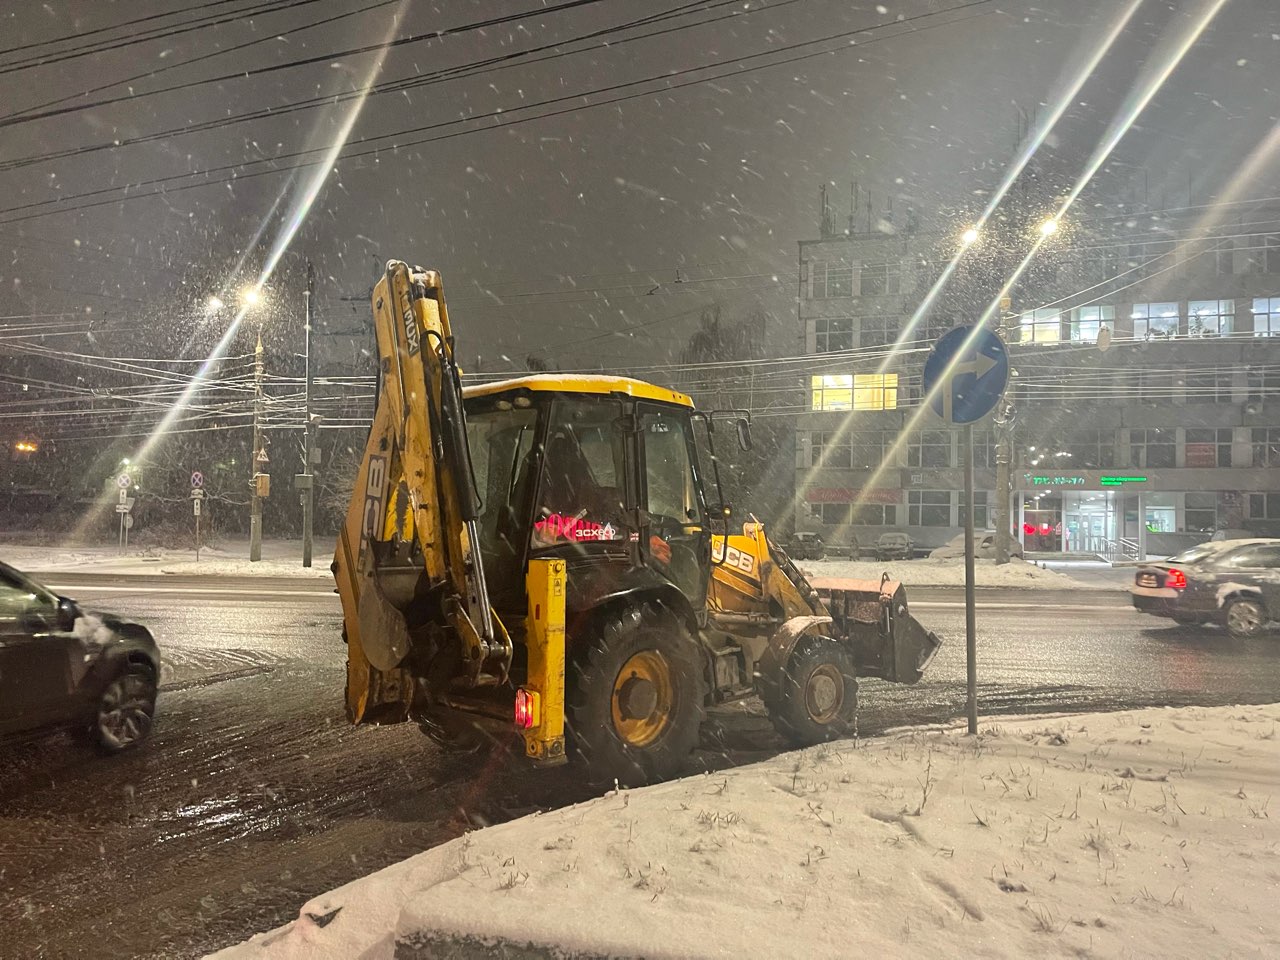 987 административных дел завели из-за плохой уборки снега в Нижнем Новгороде - фото 1